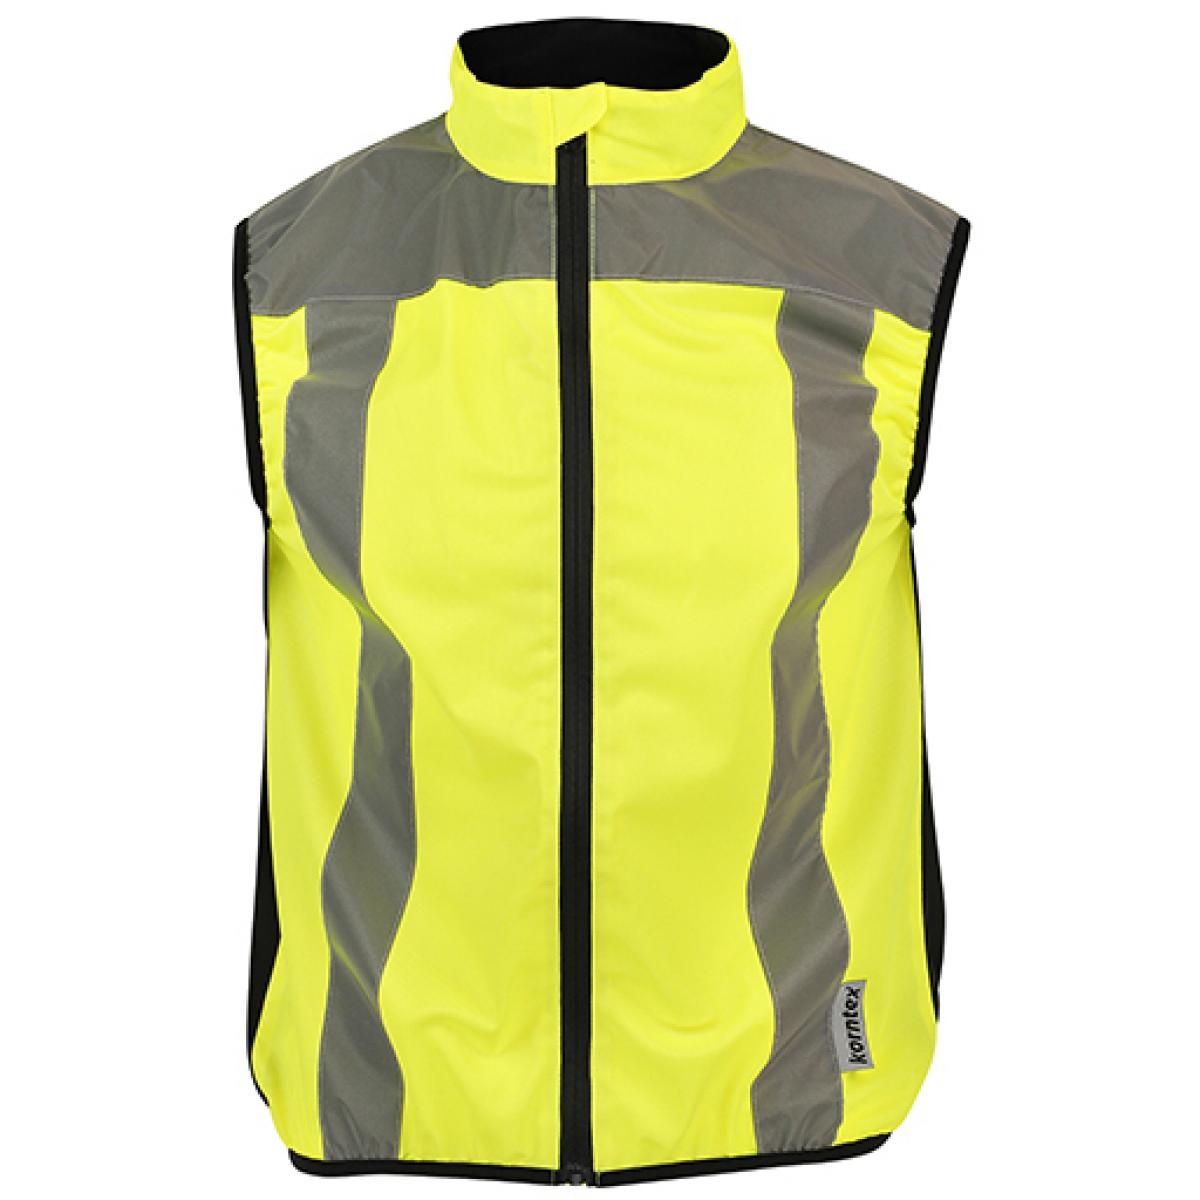 Hersteller: Korntex Herstellernummer: KXMW Artikelbezeichnung: Mobility Vest, EN ISO 20471:2013 + A1:2016 Farbe: Signal Yellow